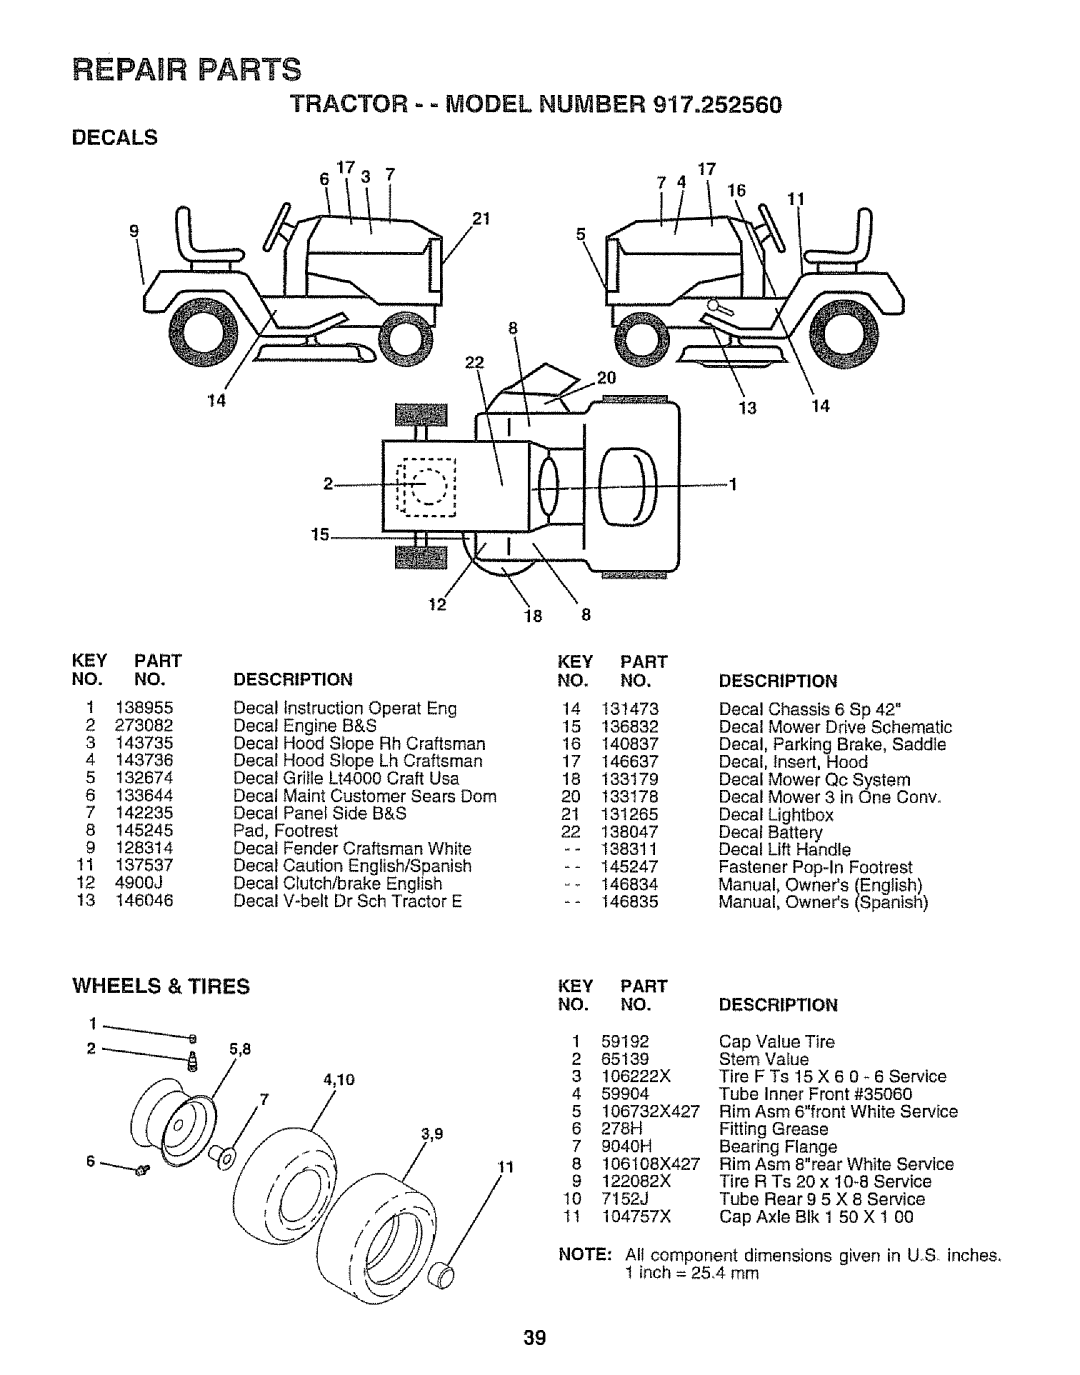 Craftsman 917.252560 manual Tractor - = Model Number, Repair Parts, Description, Stem Value, F Ts 